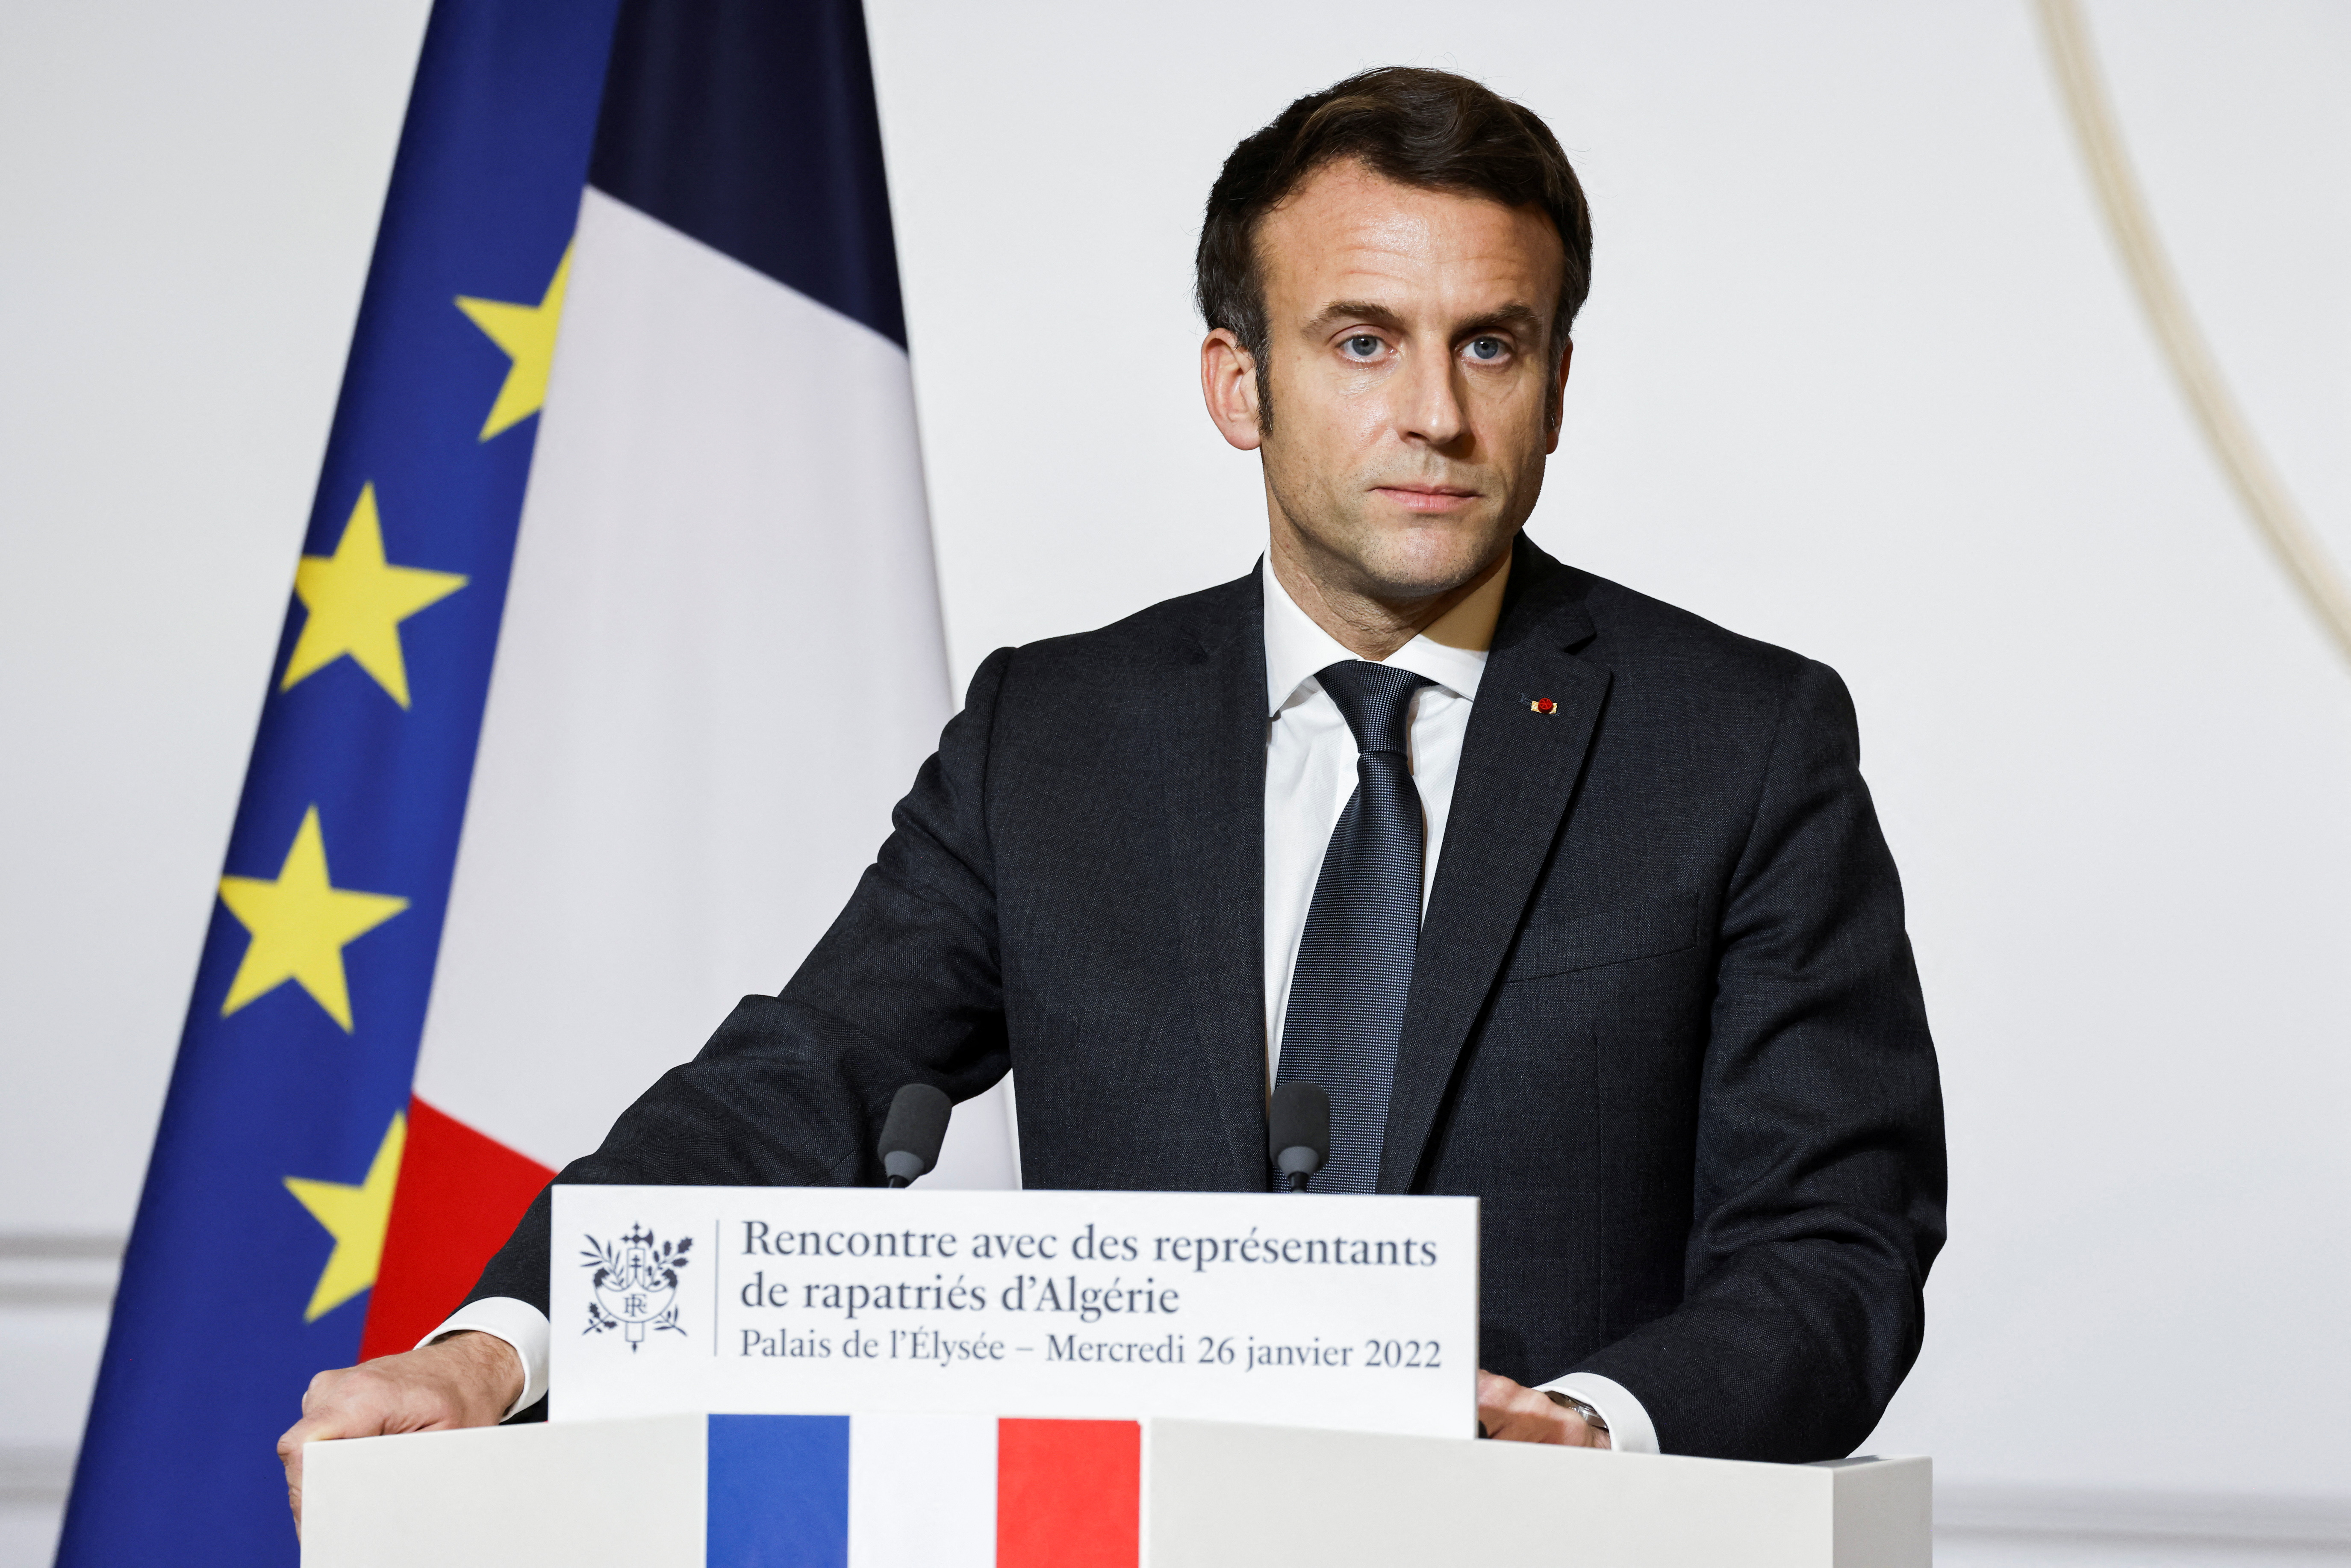 El presidente francés Emmanuel Macron sube su sitio de campaña en linea dando un indicio de un secreto guardado celosamente: la fecha del anuncio formal.